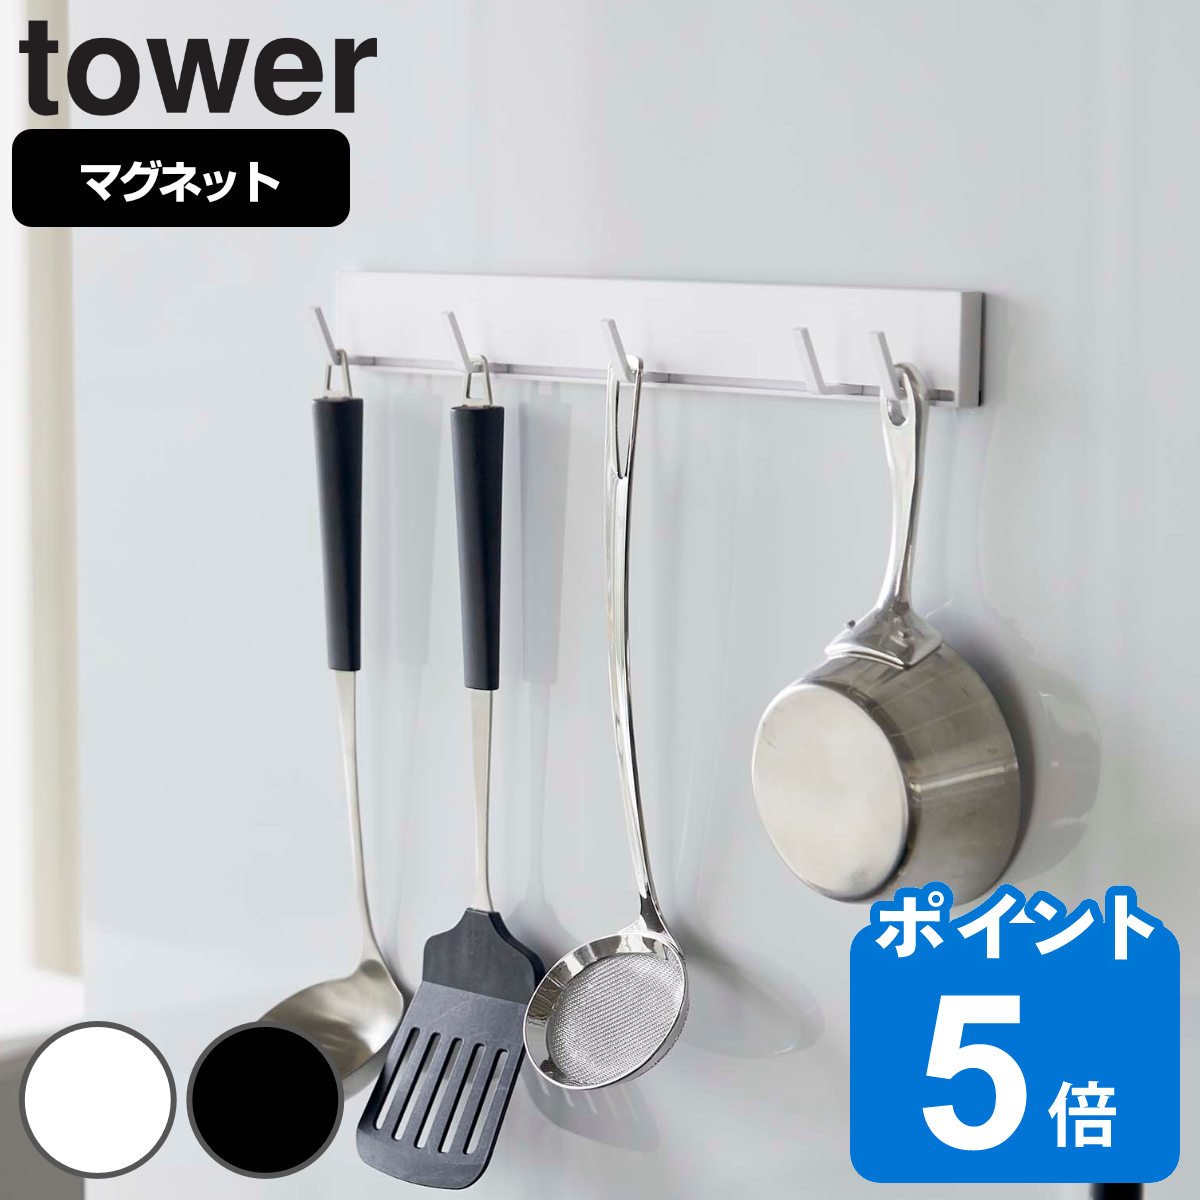 tower マグネット可動式キッチンツールフック タワー